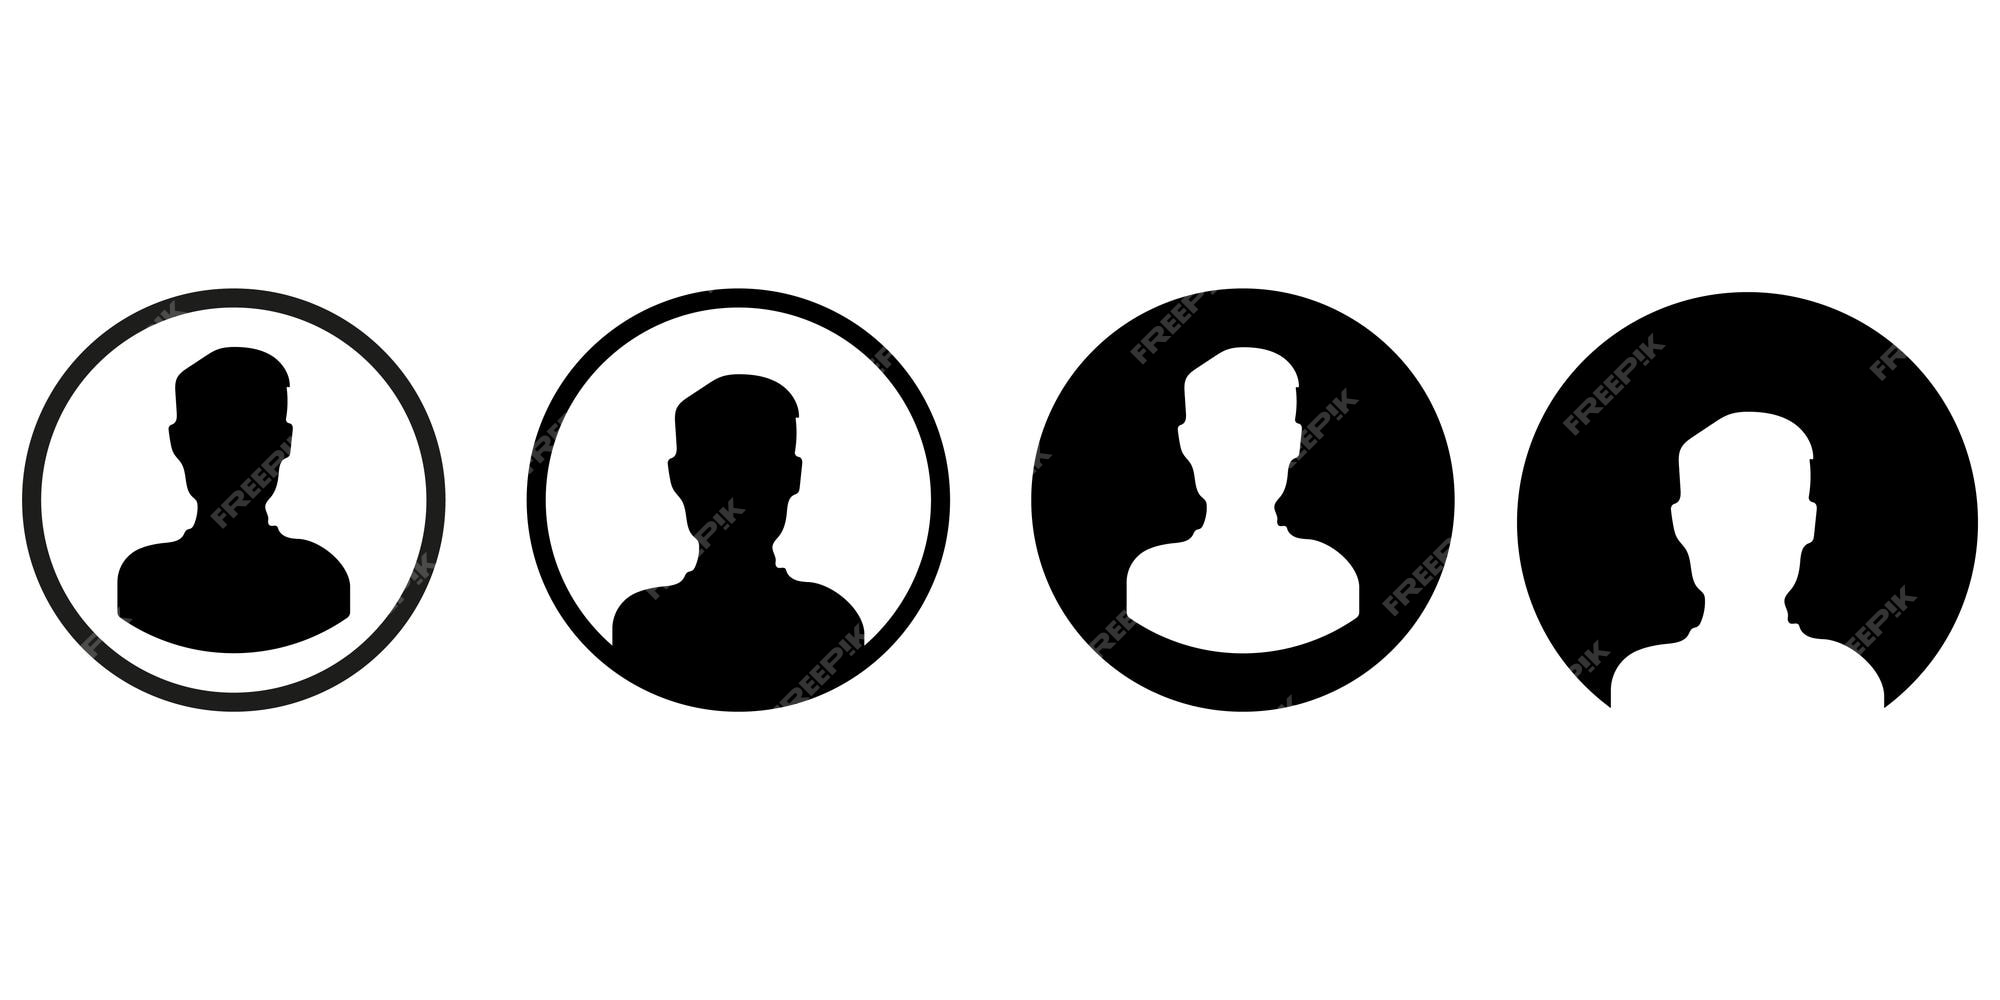 Bộ sưu tập biểu tượng người Human-Icon-Set sẽ mang đến cho bạn các avatar độc đáo, từ bộ mặt đến hình ảnh người dùng hay nhân vật nam thần. Với human-icons-set-face-icon-user-avatar-icon-or-male-avatar-icon, bạn sẽ trở nên nổi bật trên mạng xã hội và thu hút sự chú ý của nhiều người.